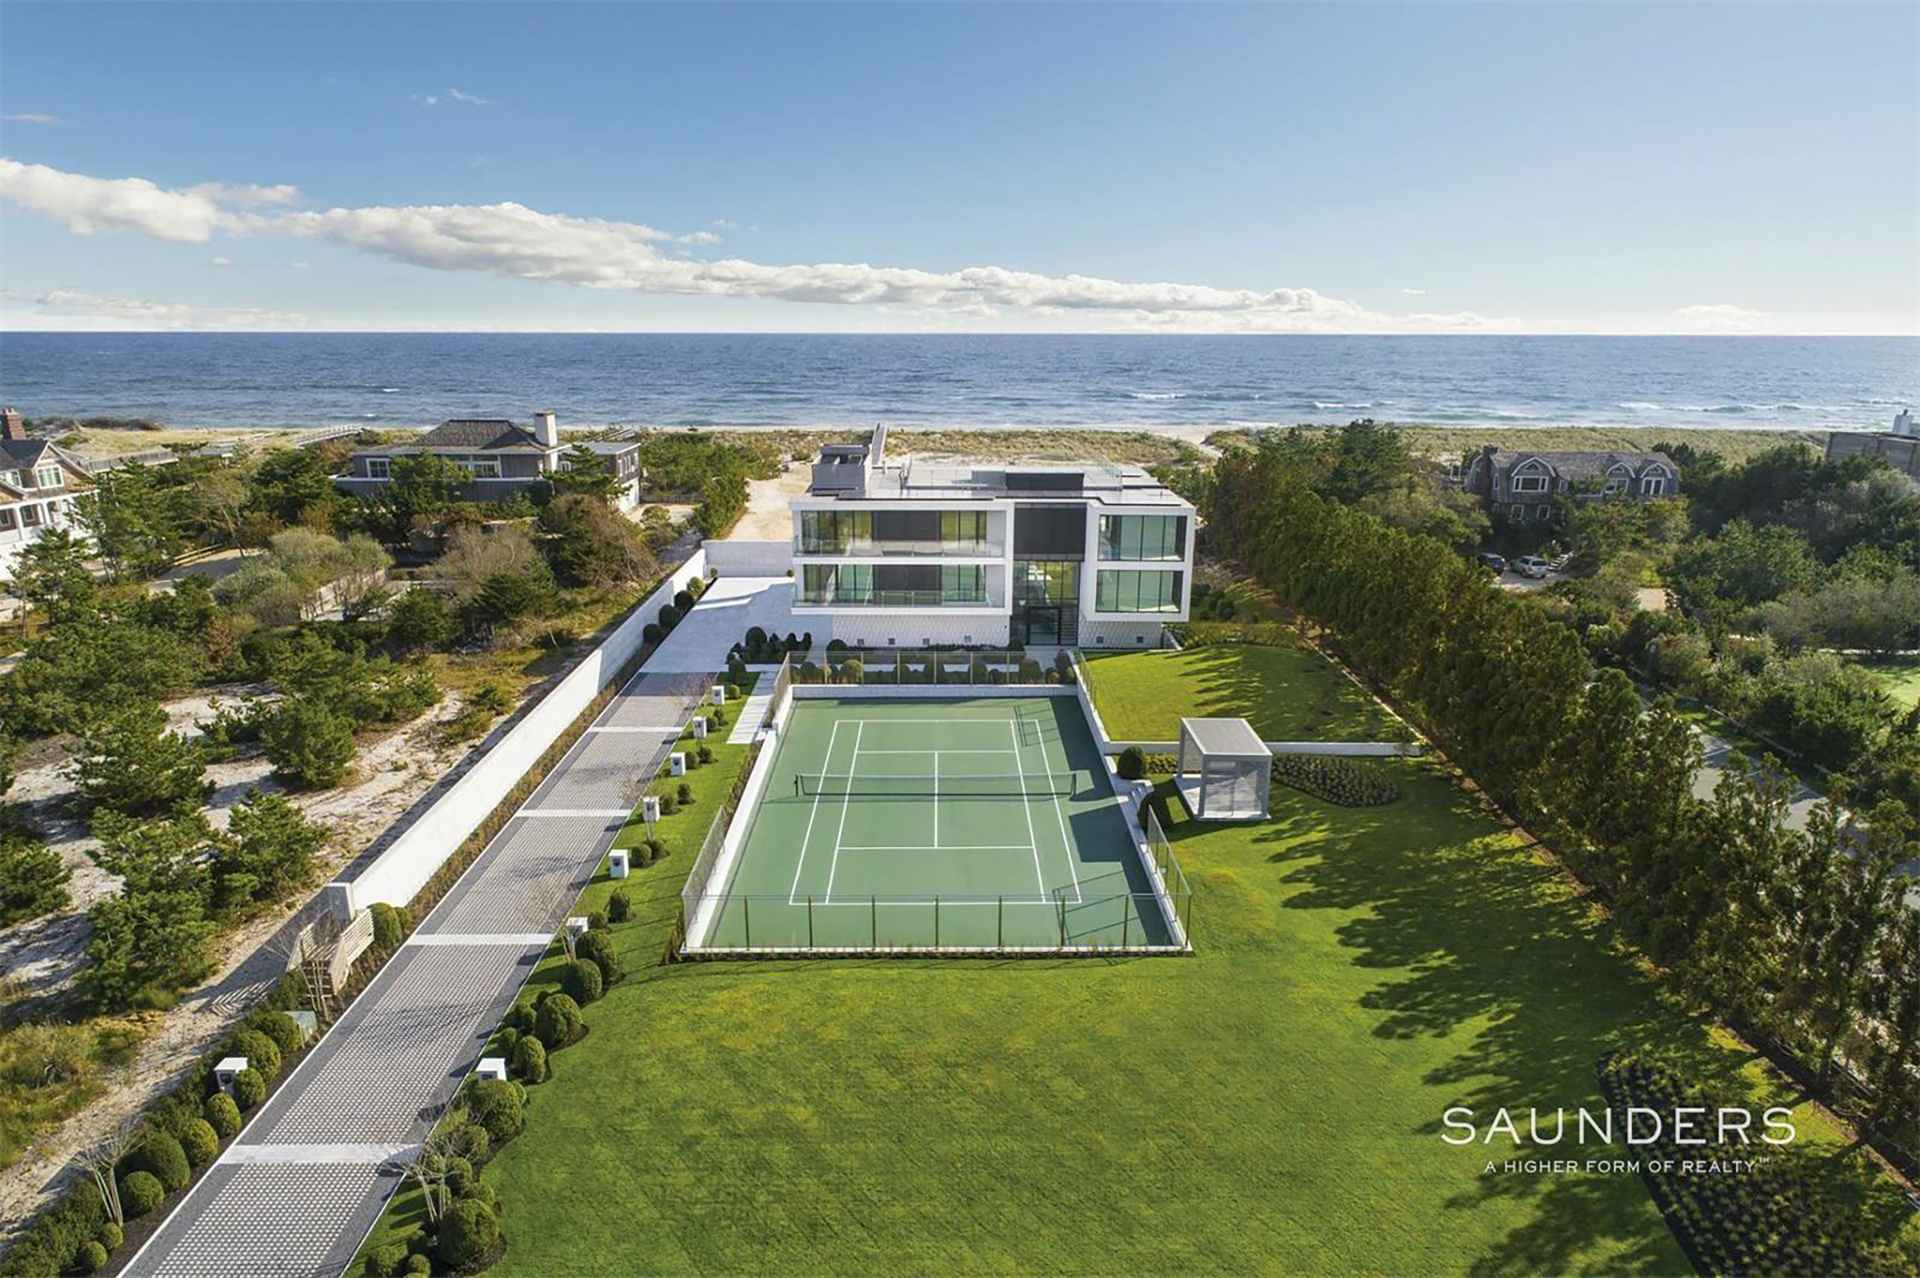 The Hamptons ofrece un refugio exclusivo a unas 2h30 de auto desde Manhattan, con paisajes de costa, playa y masiones (foto: Saunders Real Estate)

